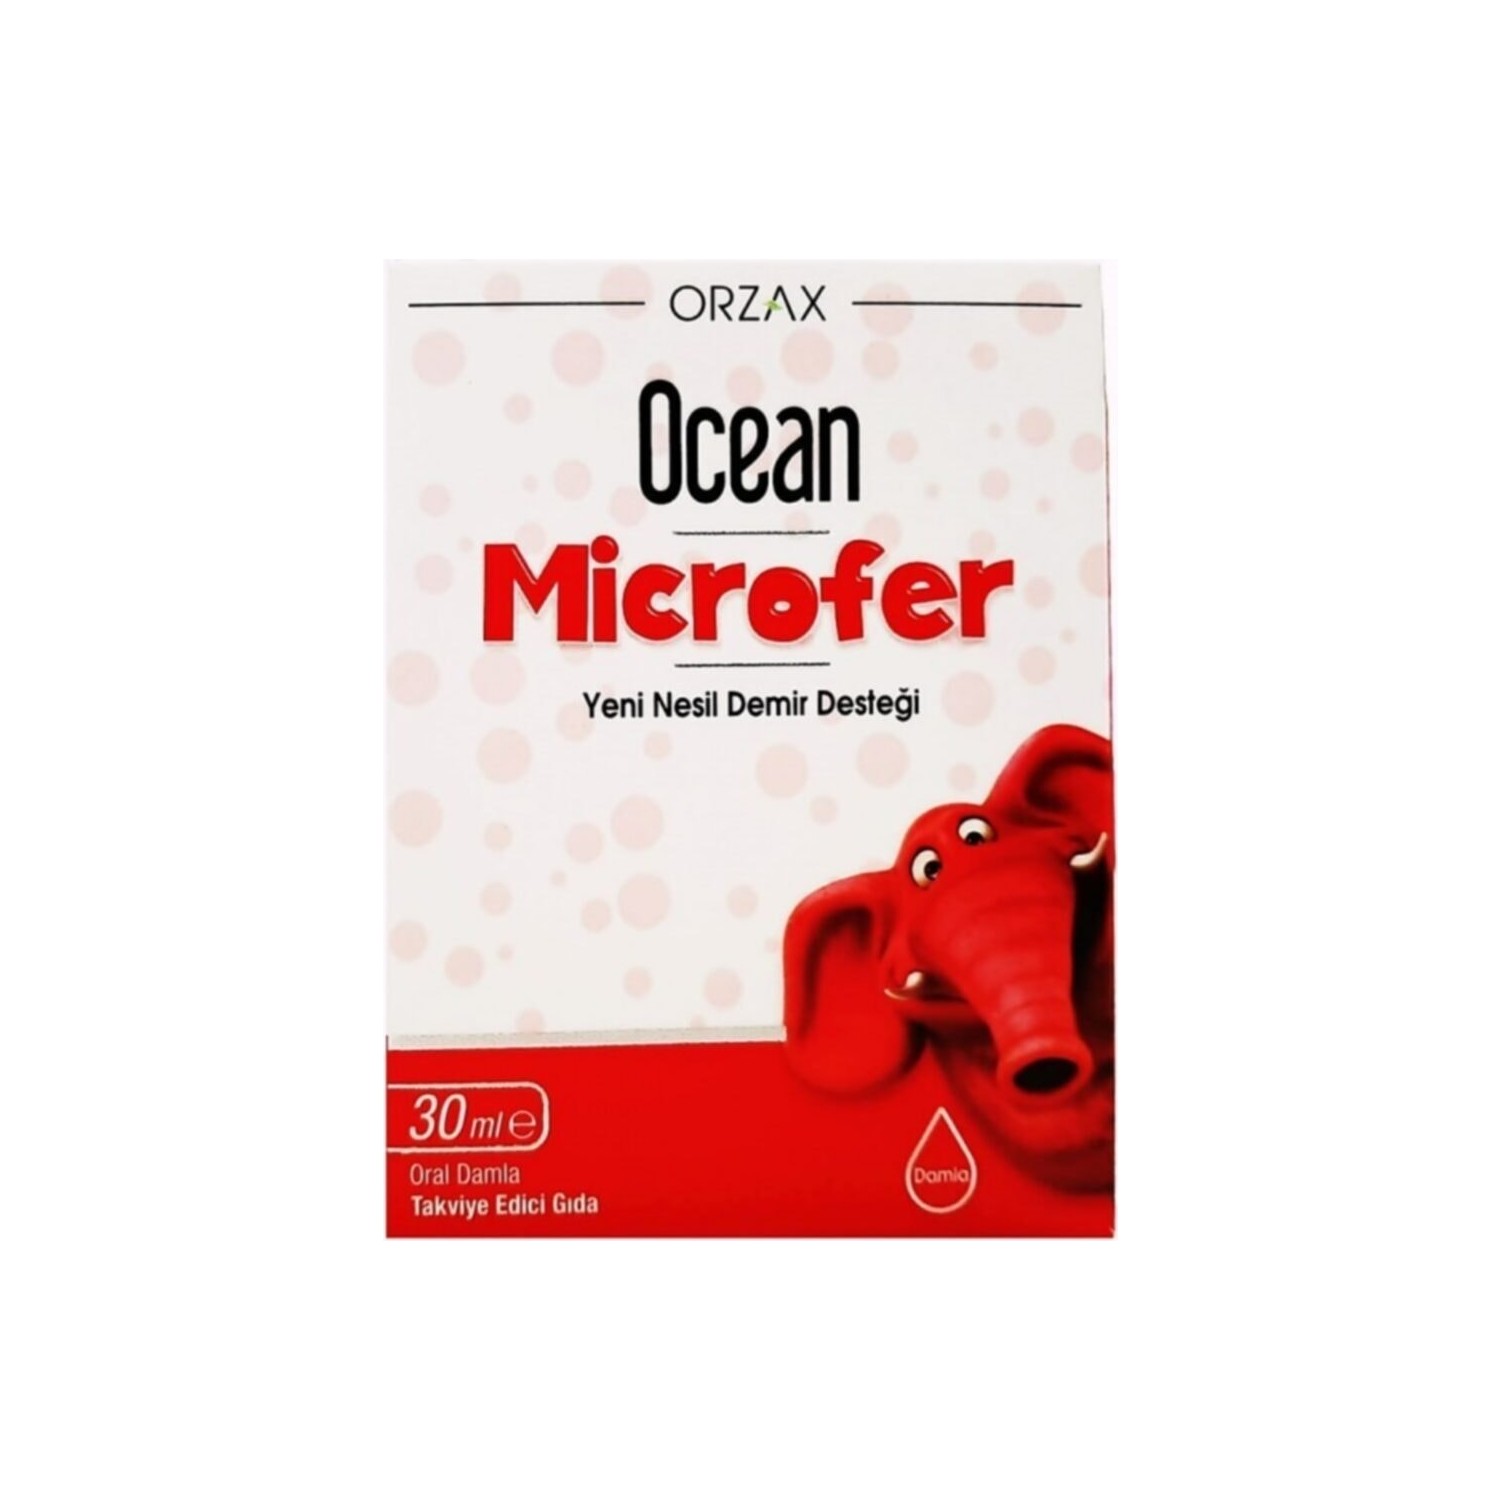 Капли Ocean Orzax Microfer, 30 мл цена и фото